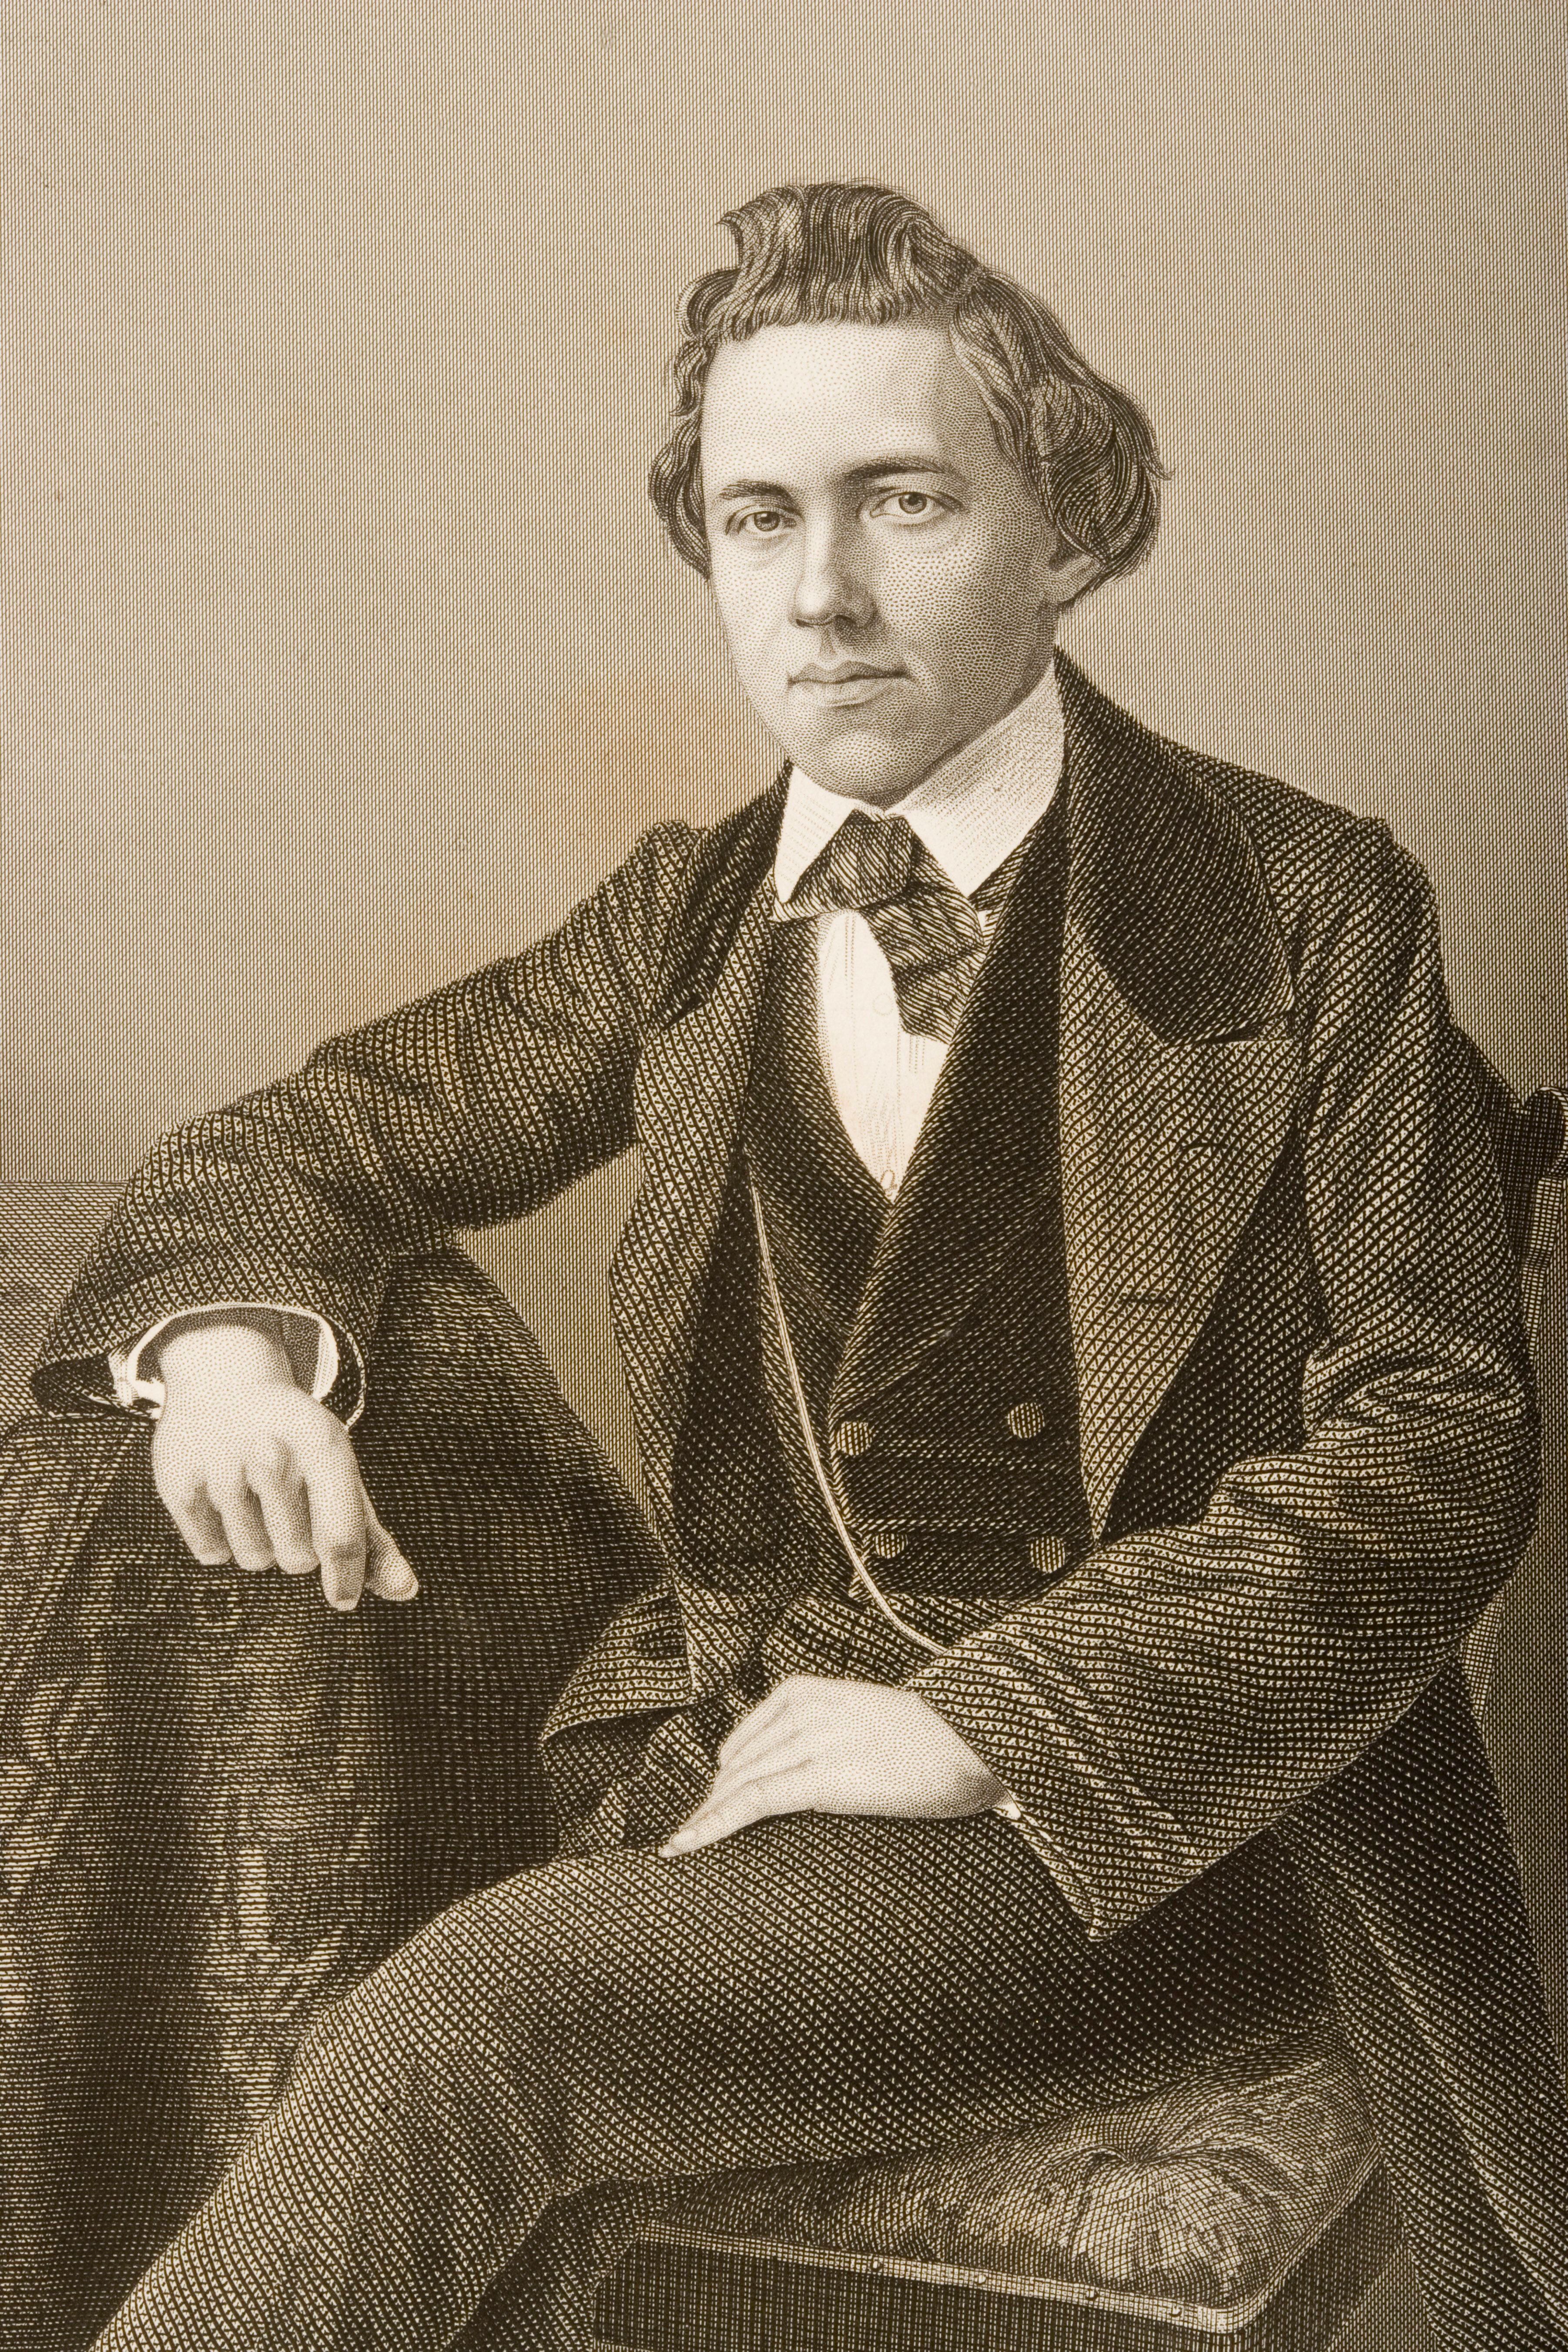 Retrato de Paul Charles Morphy publicado en 1859. 